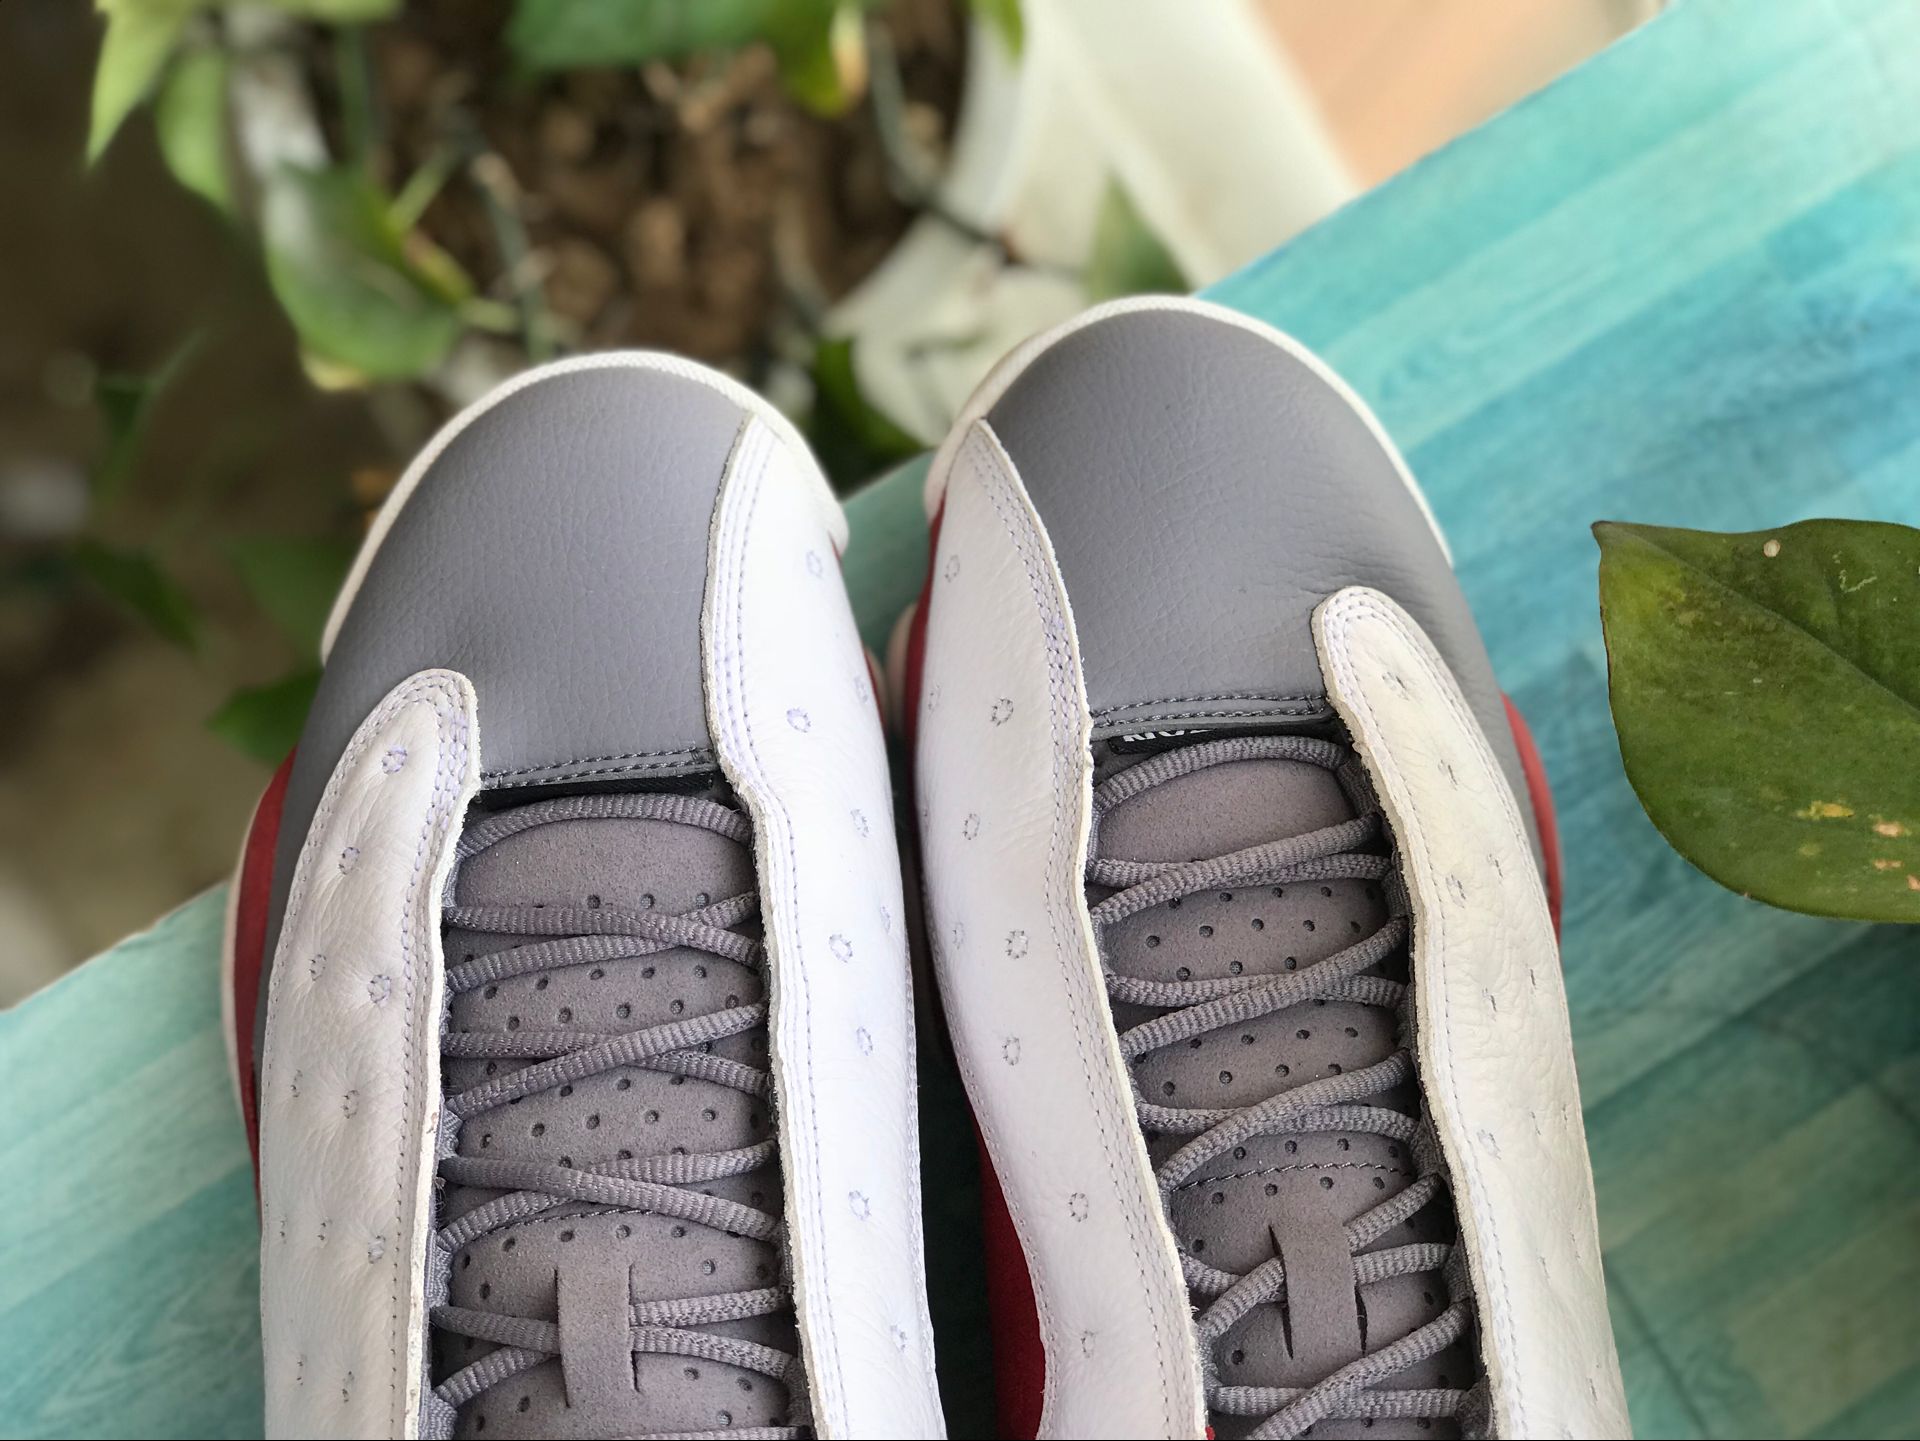 Nike Air Jordan 13 Retro Cement Grey Toe 414571 126 17 - www.kickbulk.co